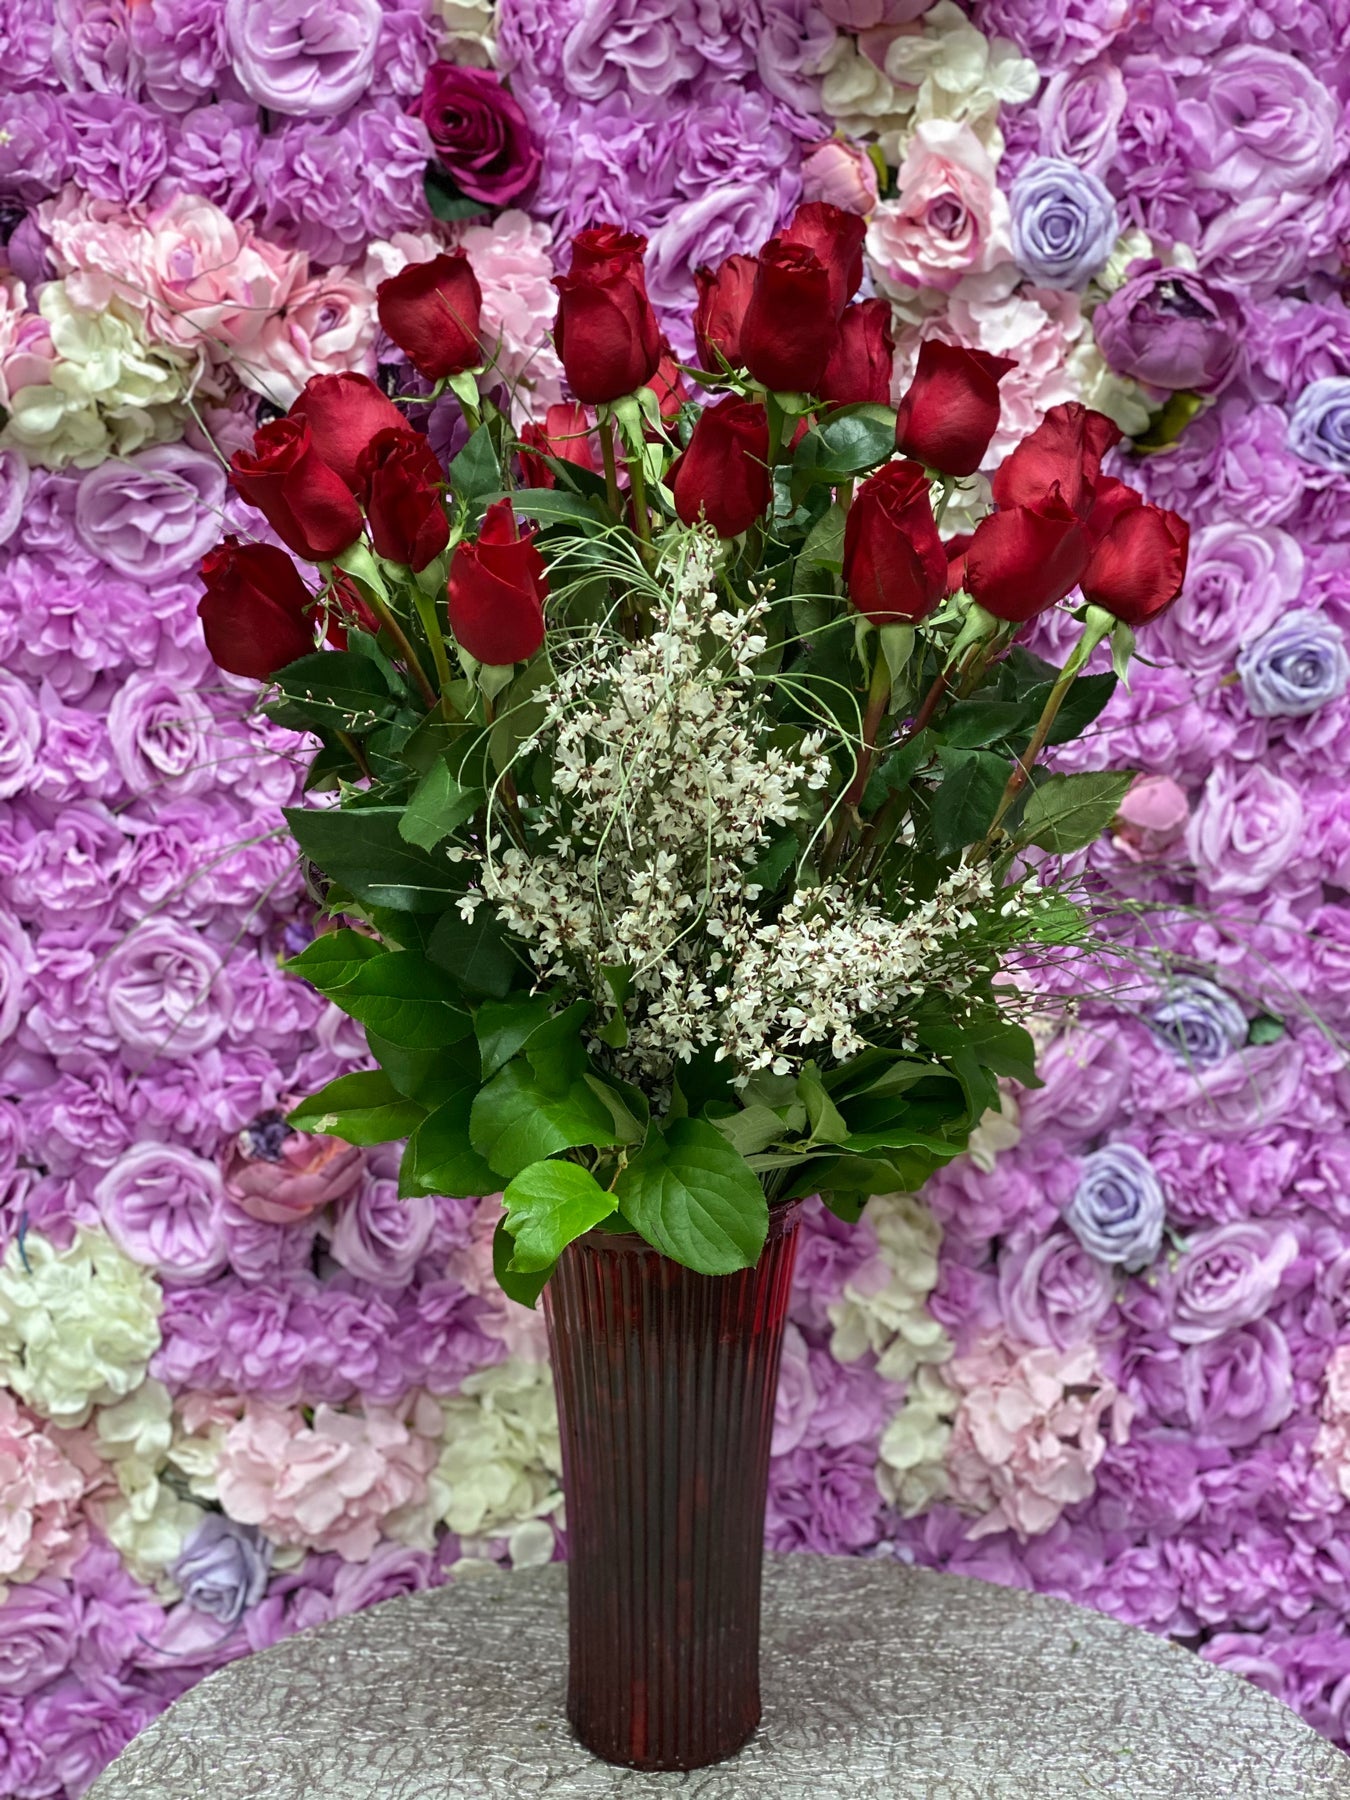 2 dozen roses in vase